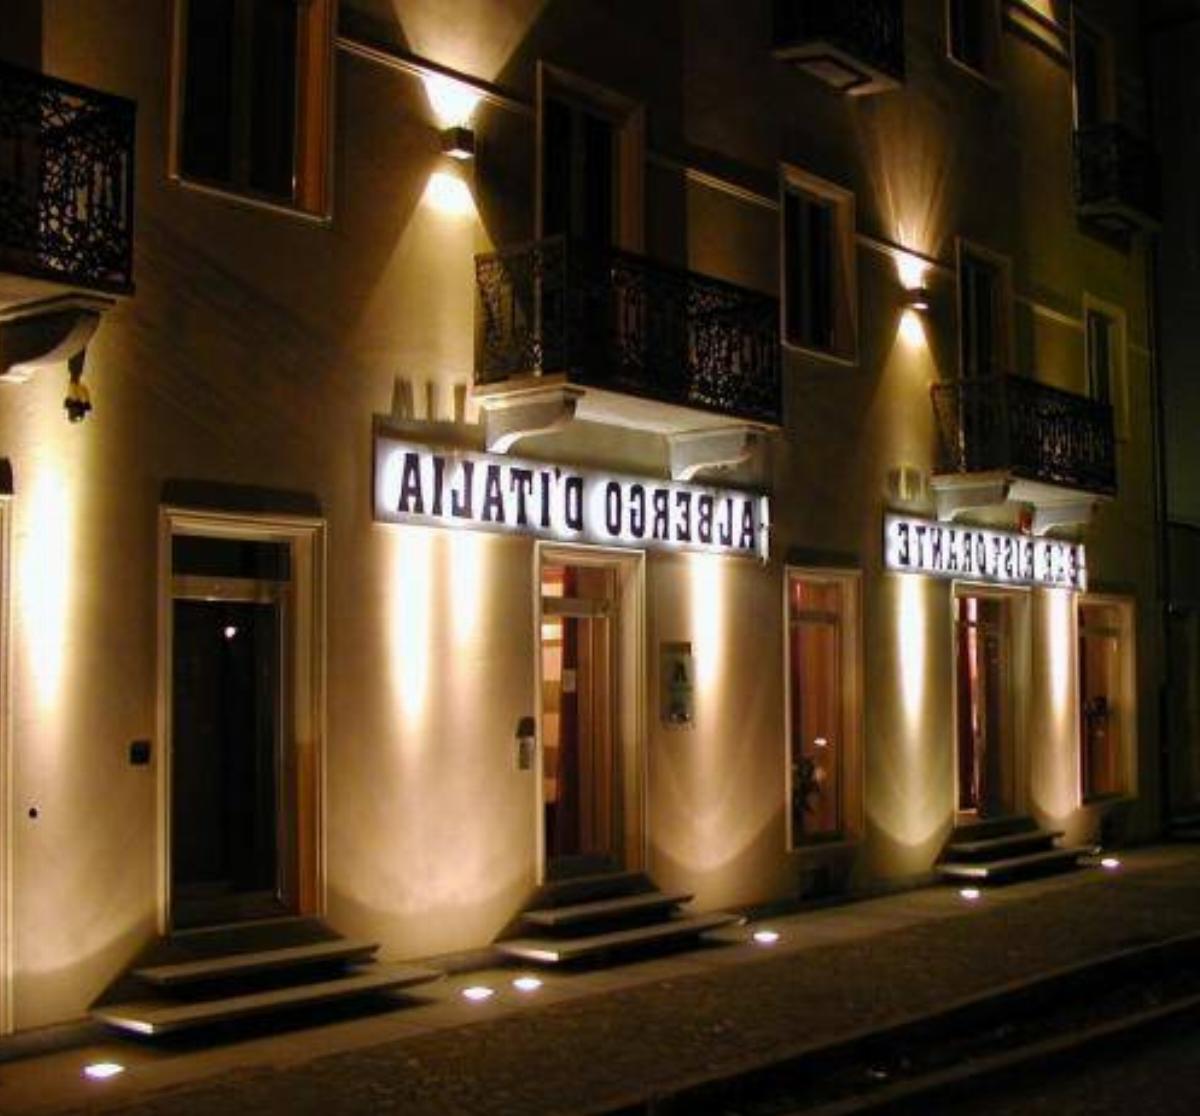 Albergo D'italia Hotel Chivasso Italy